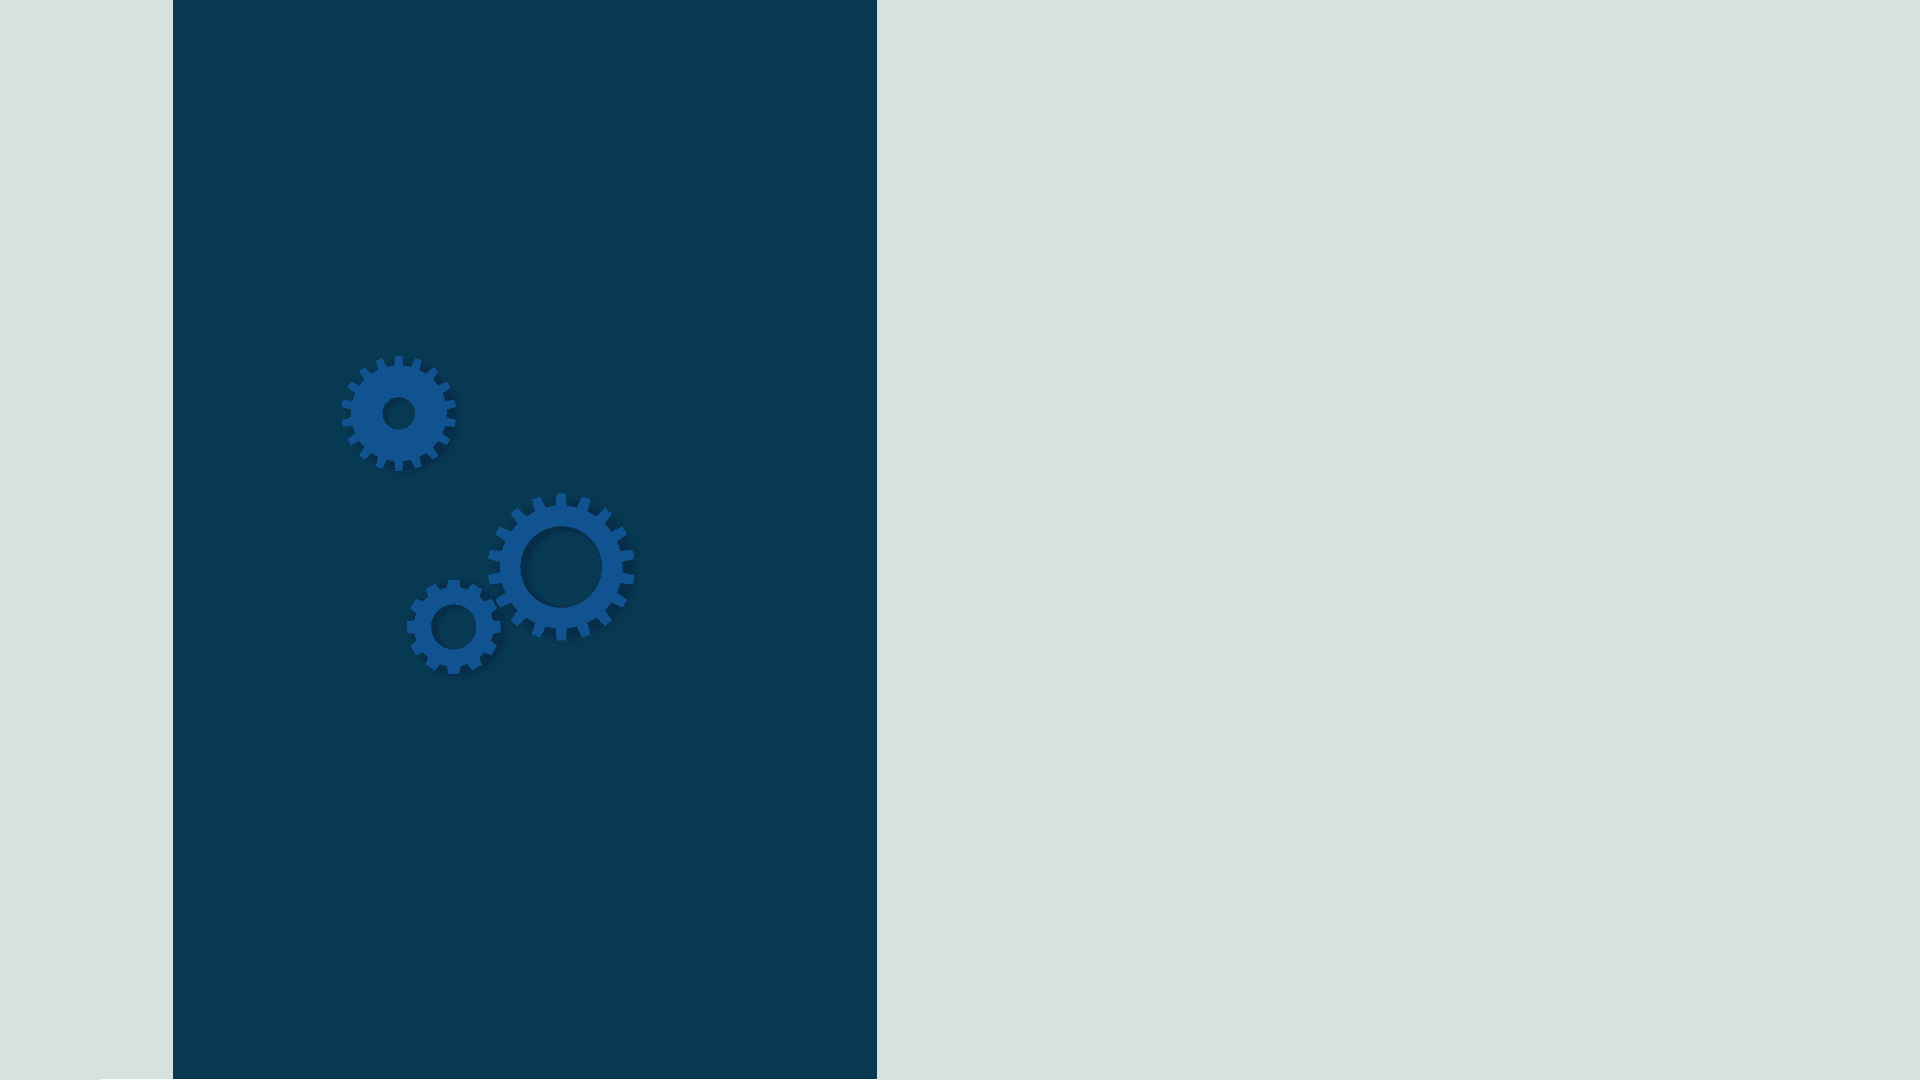 Gears in blue background